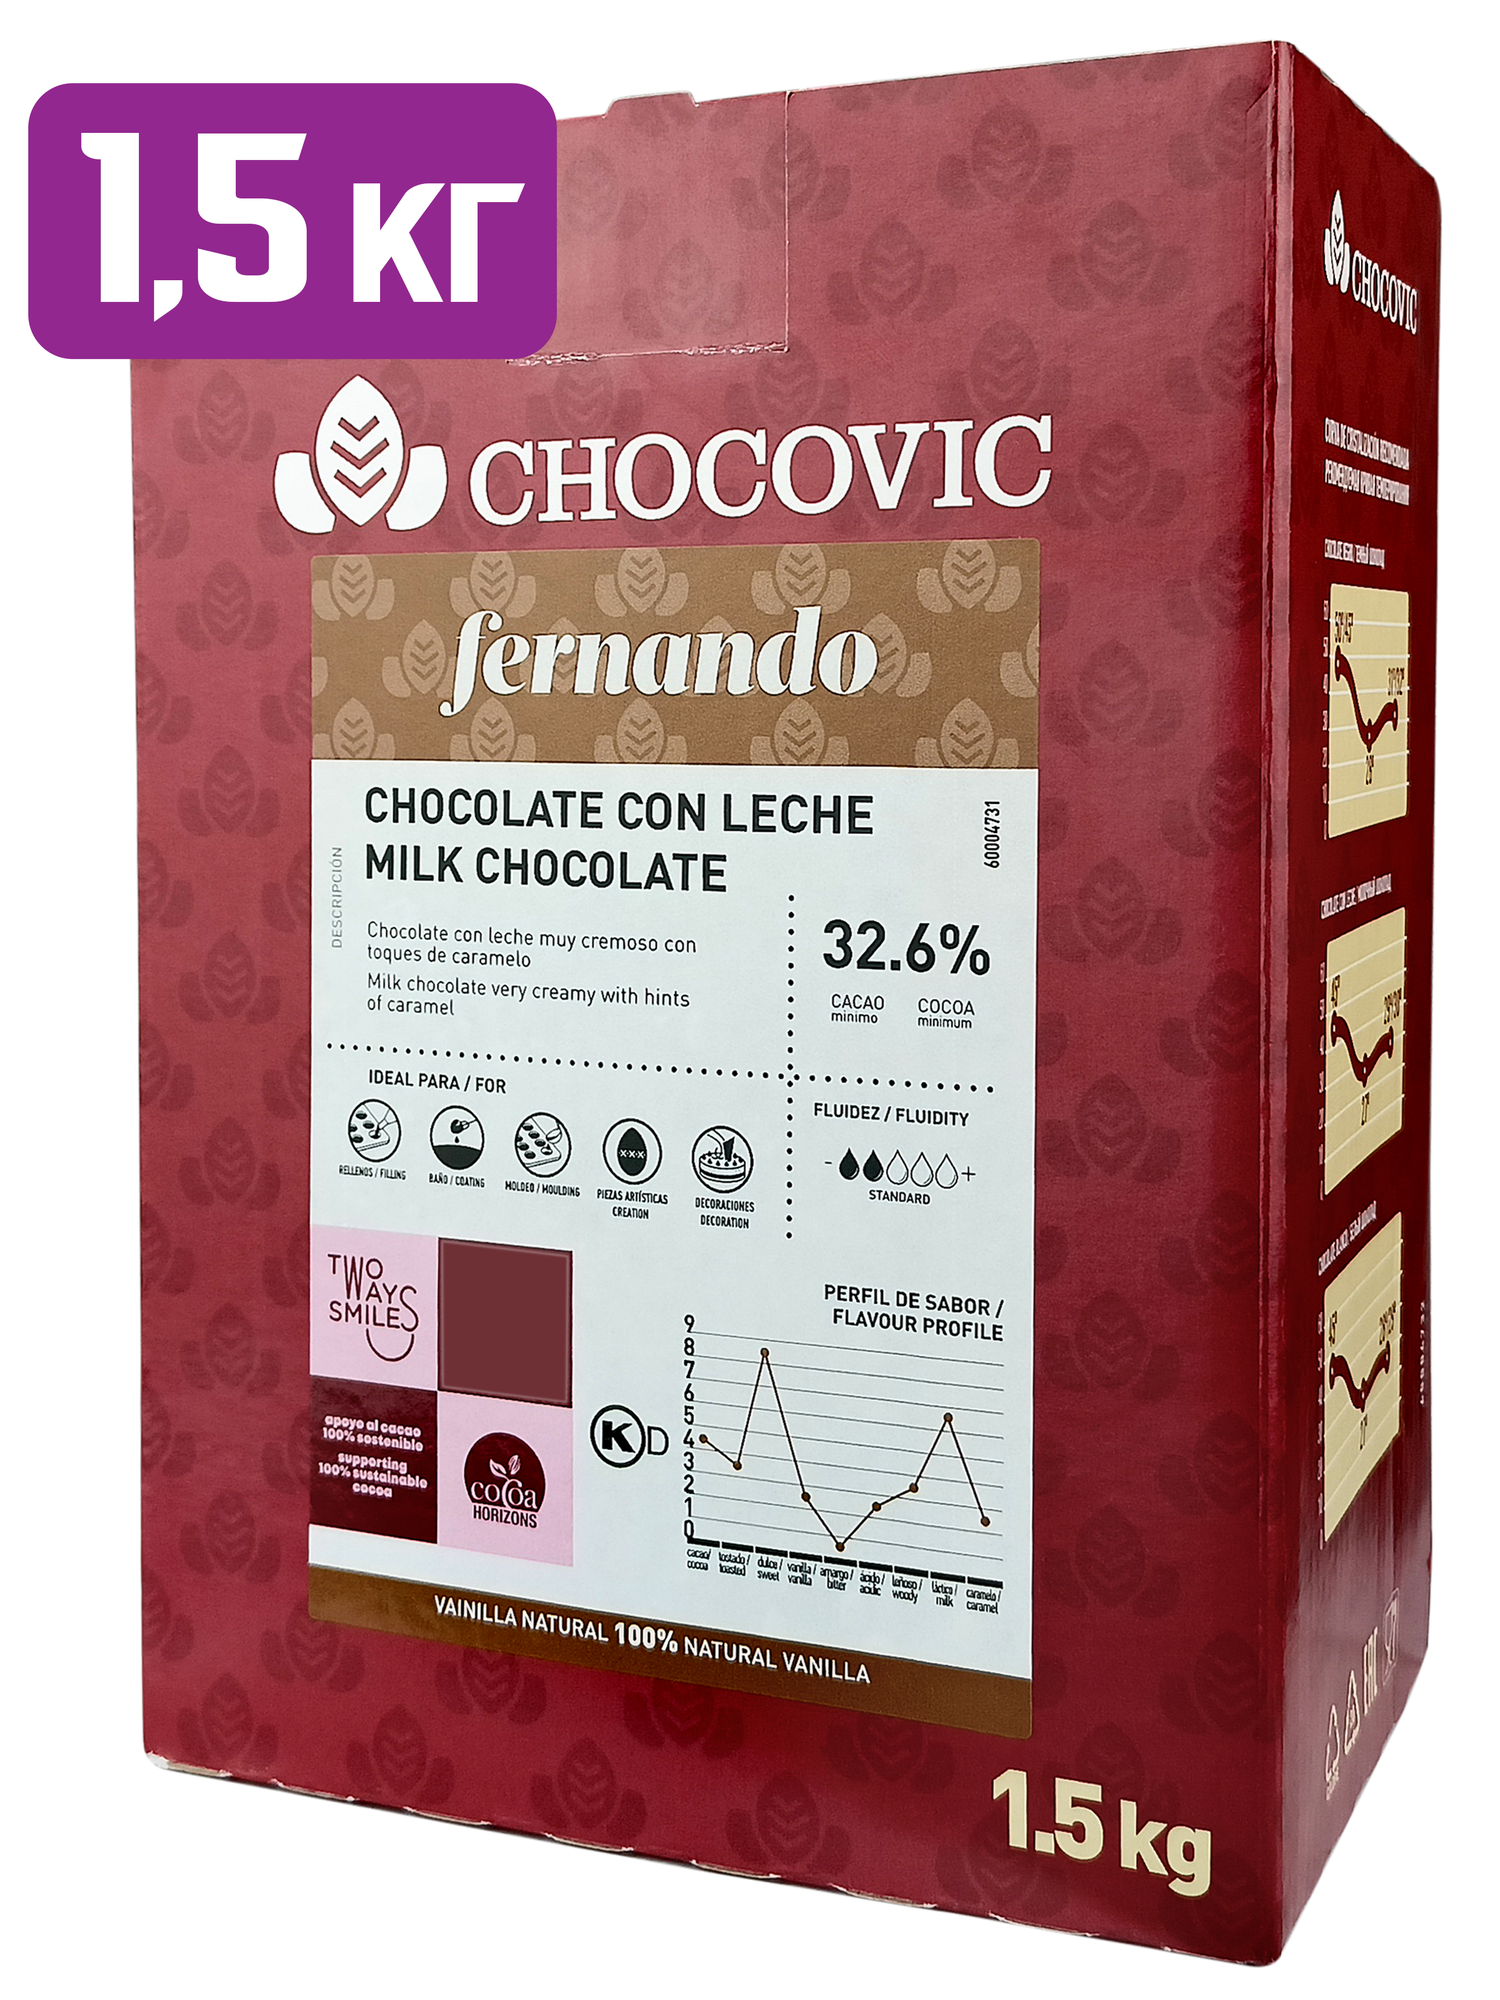 Молочный шоколад Fernando 32,6% Chocovic (Чоковик) дропсы (шоколадные капли, каллеты), 1,5 кг, CHM-T19CHVC-69B